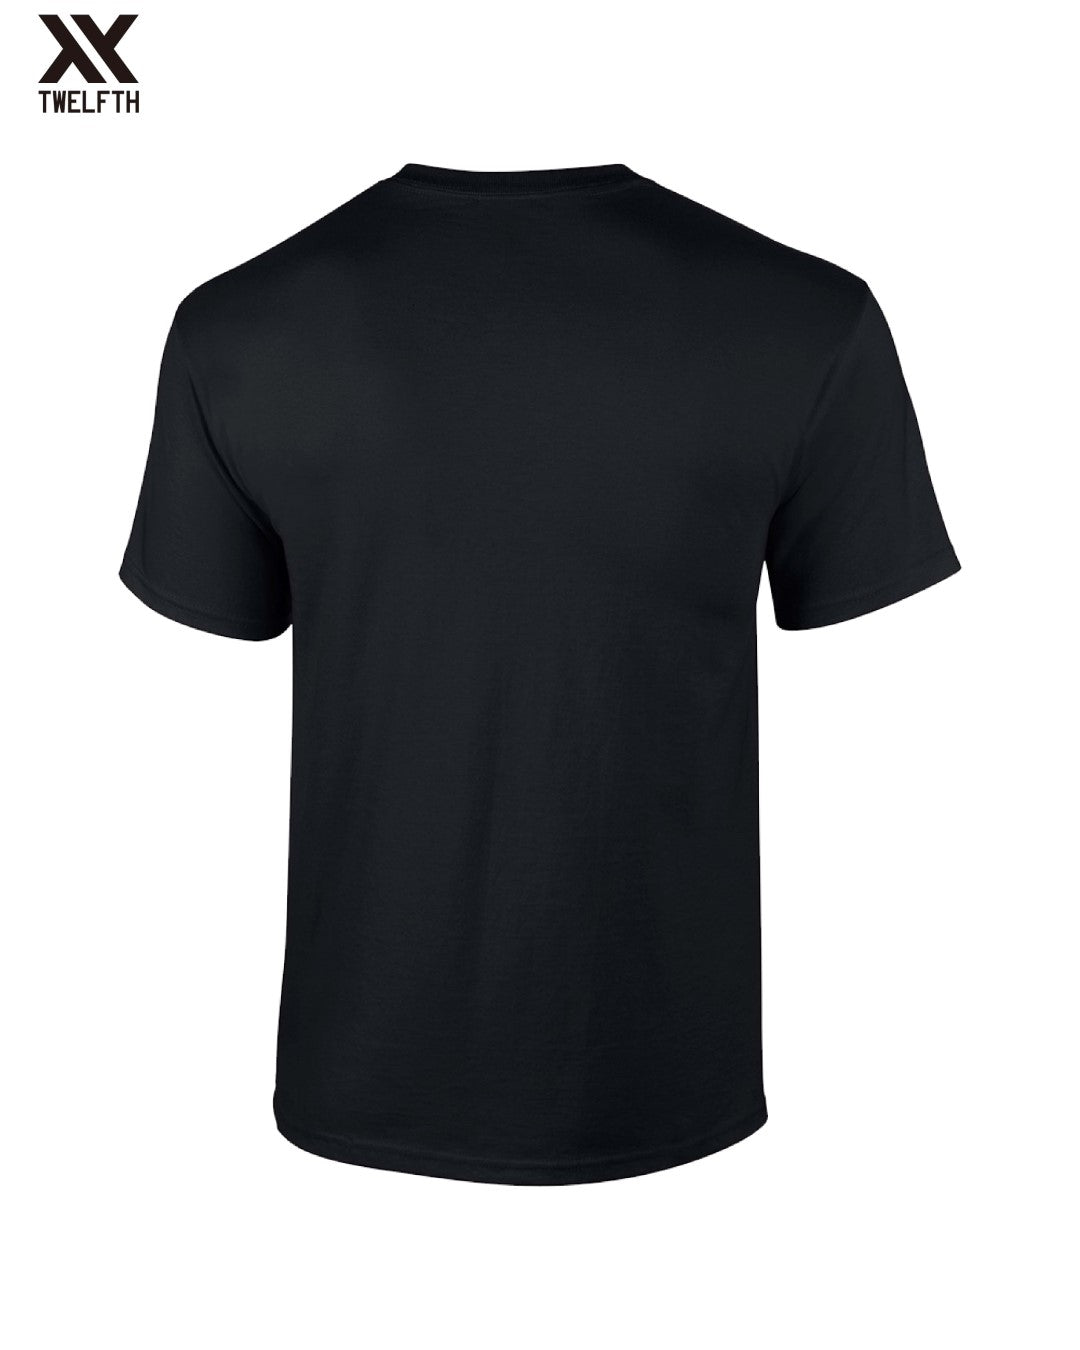 Atalanta Crest T-Shirt - Mens